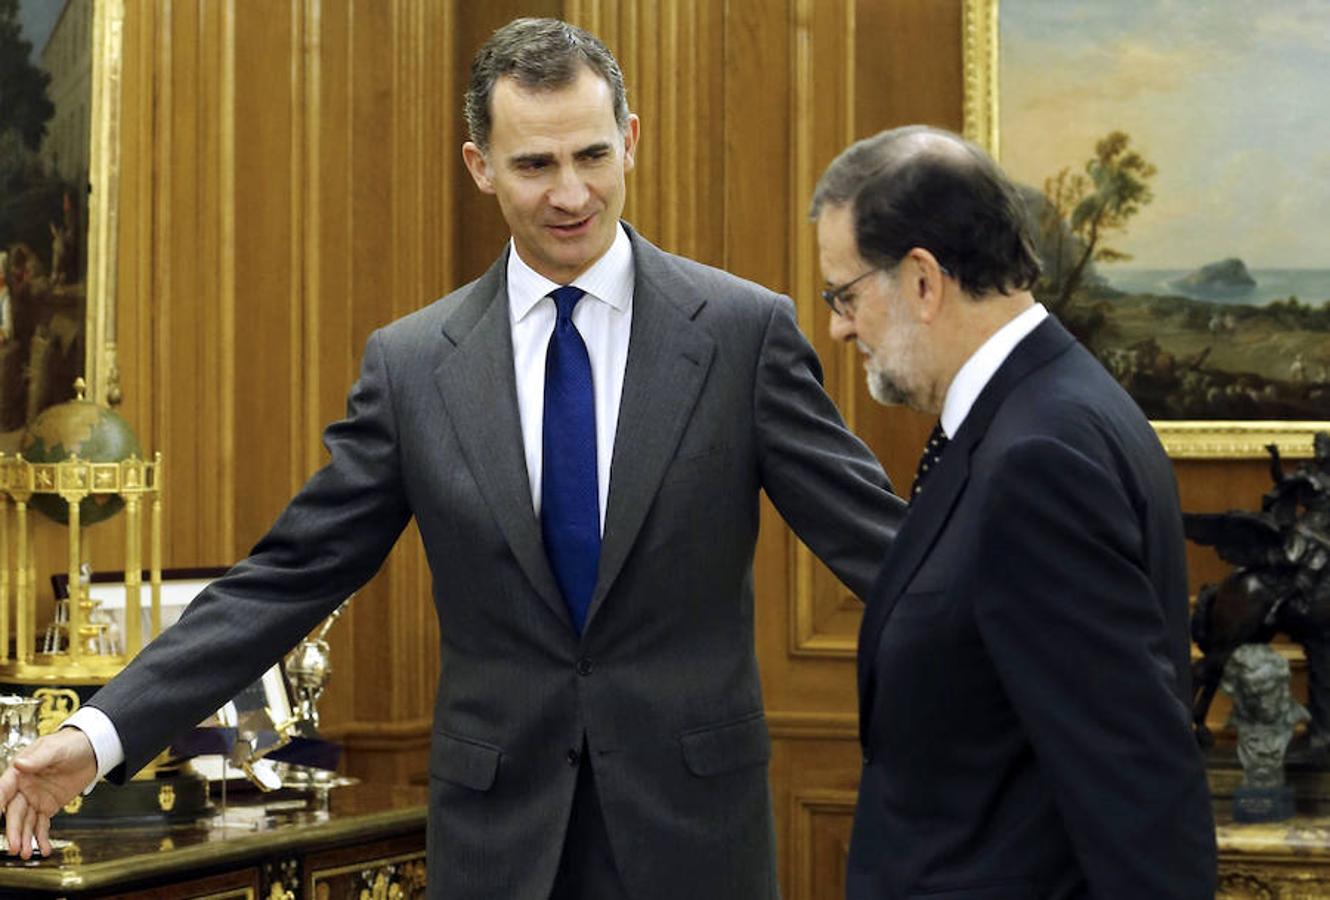 El sexto presidente del Gobierno, abandonará La Moncloa tras 7 años al frente del país.